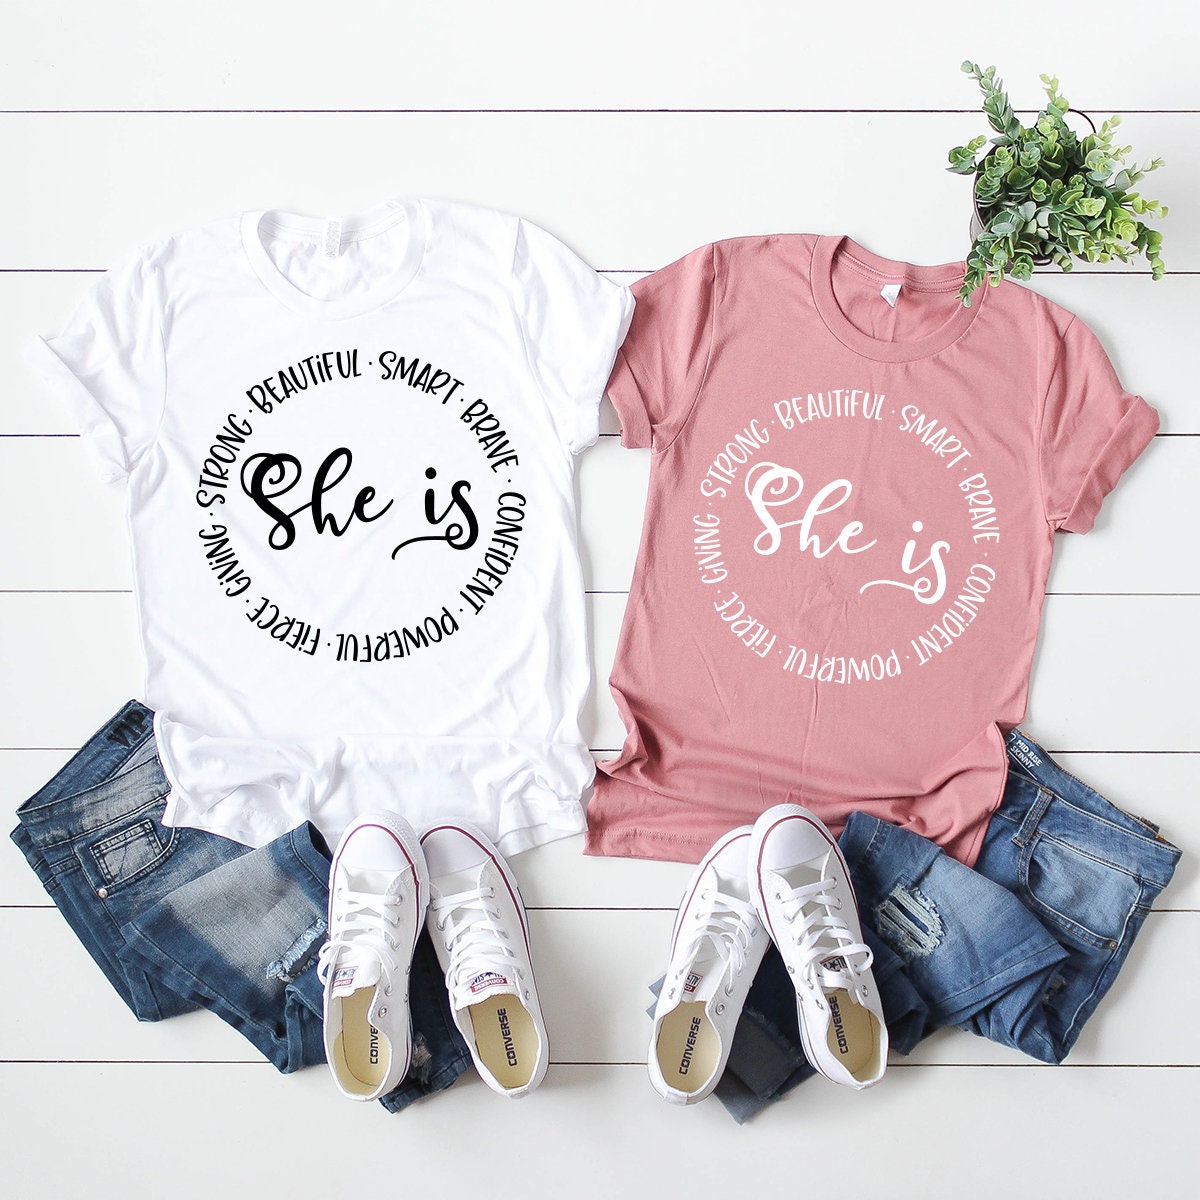 Empowered Women T-Shirt Gift For Mom Postive Shirt Feminist | Etsy